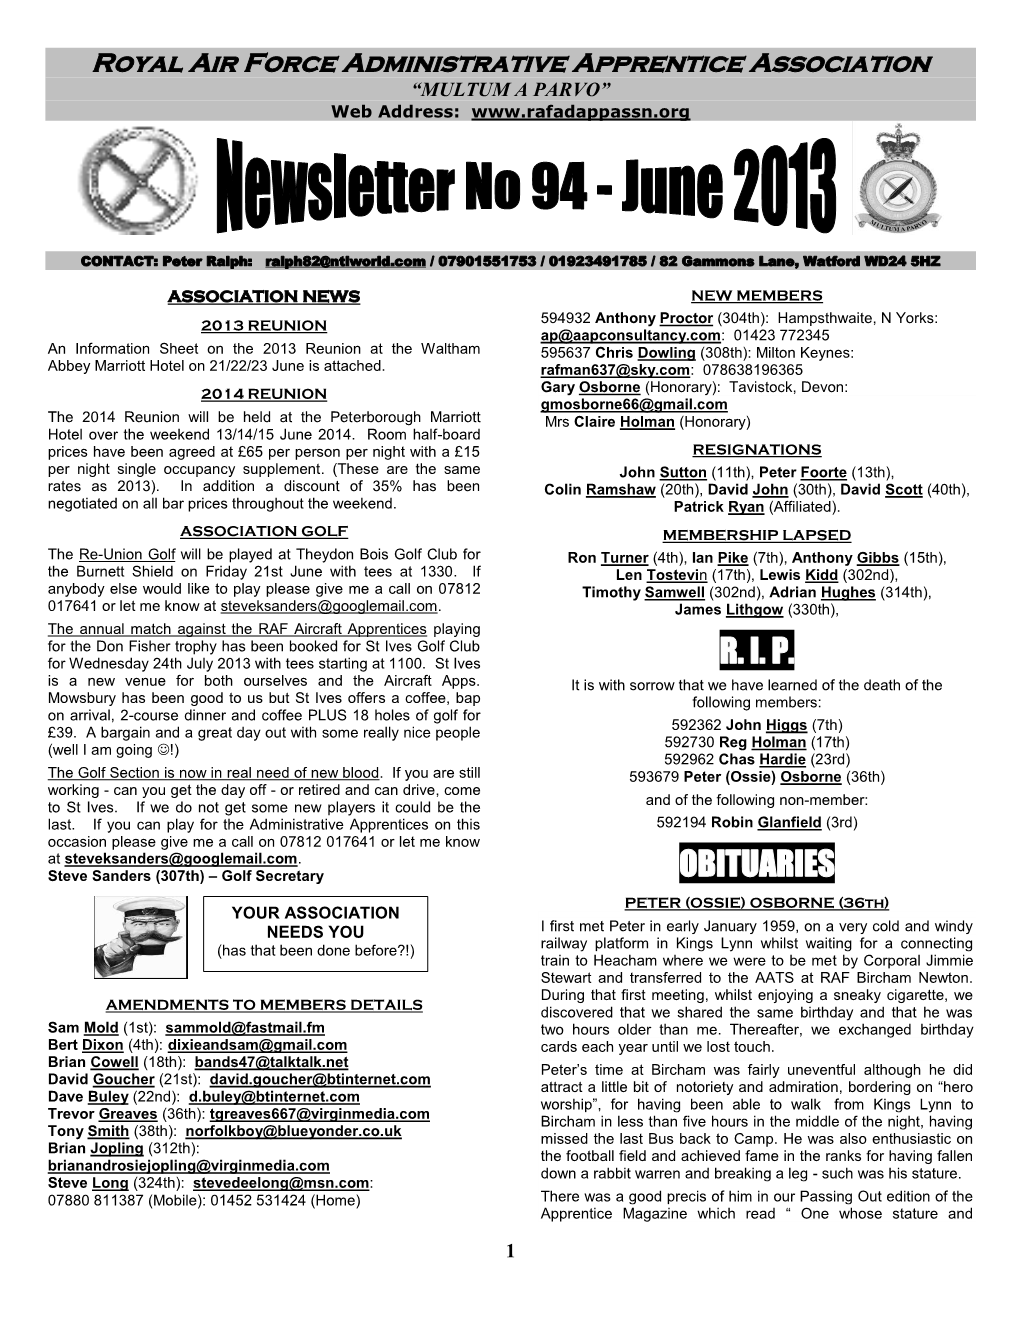 Association Newsletter No 94 – June 2013